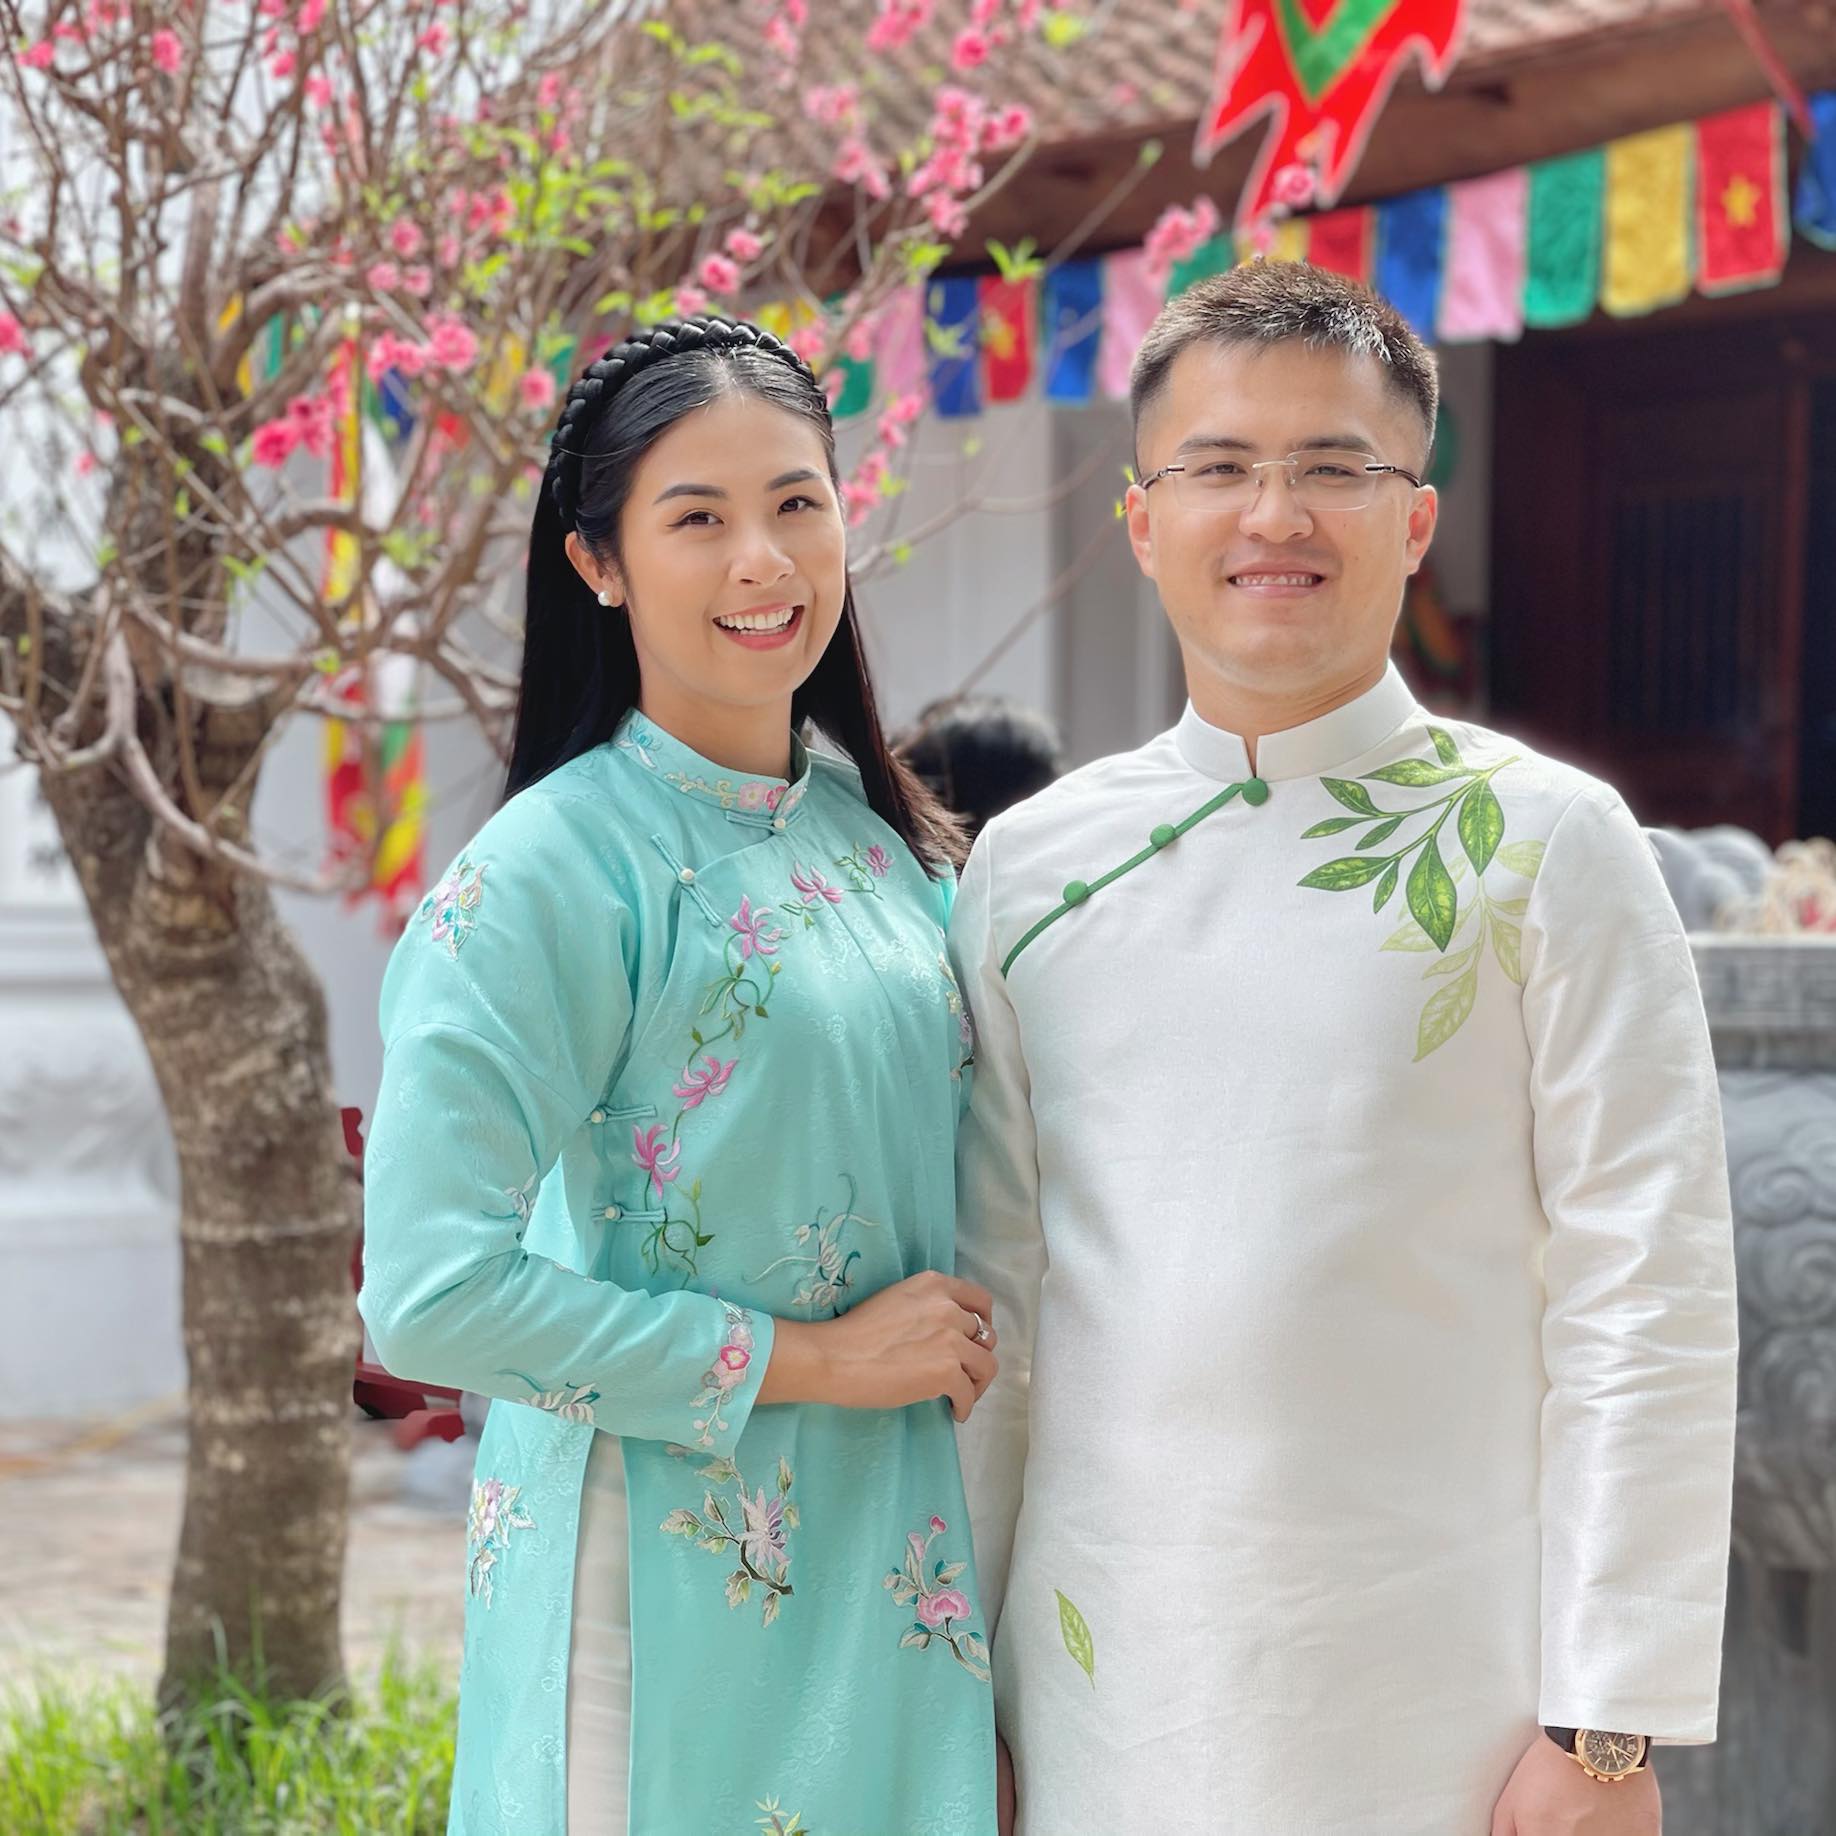 Hoa hậu Ngọc Hân đưa ra thông báo chính thức về hôn lễ sau nhiều lần trì hoãn - Ảnh 1.